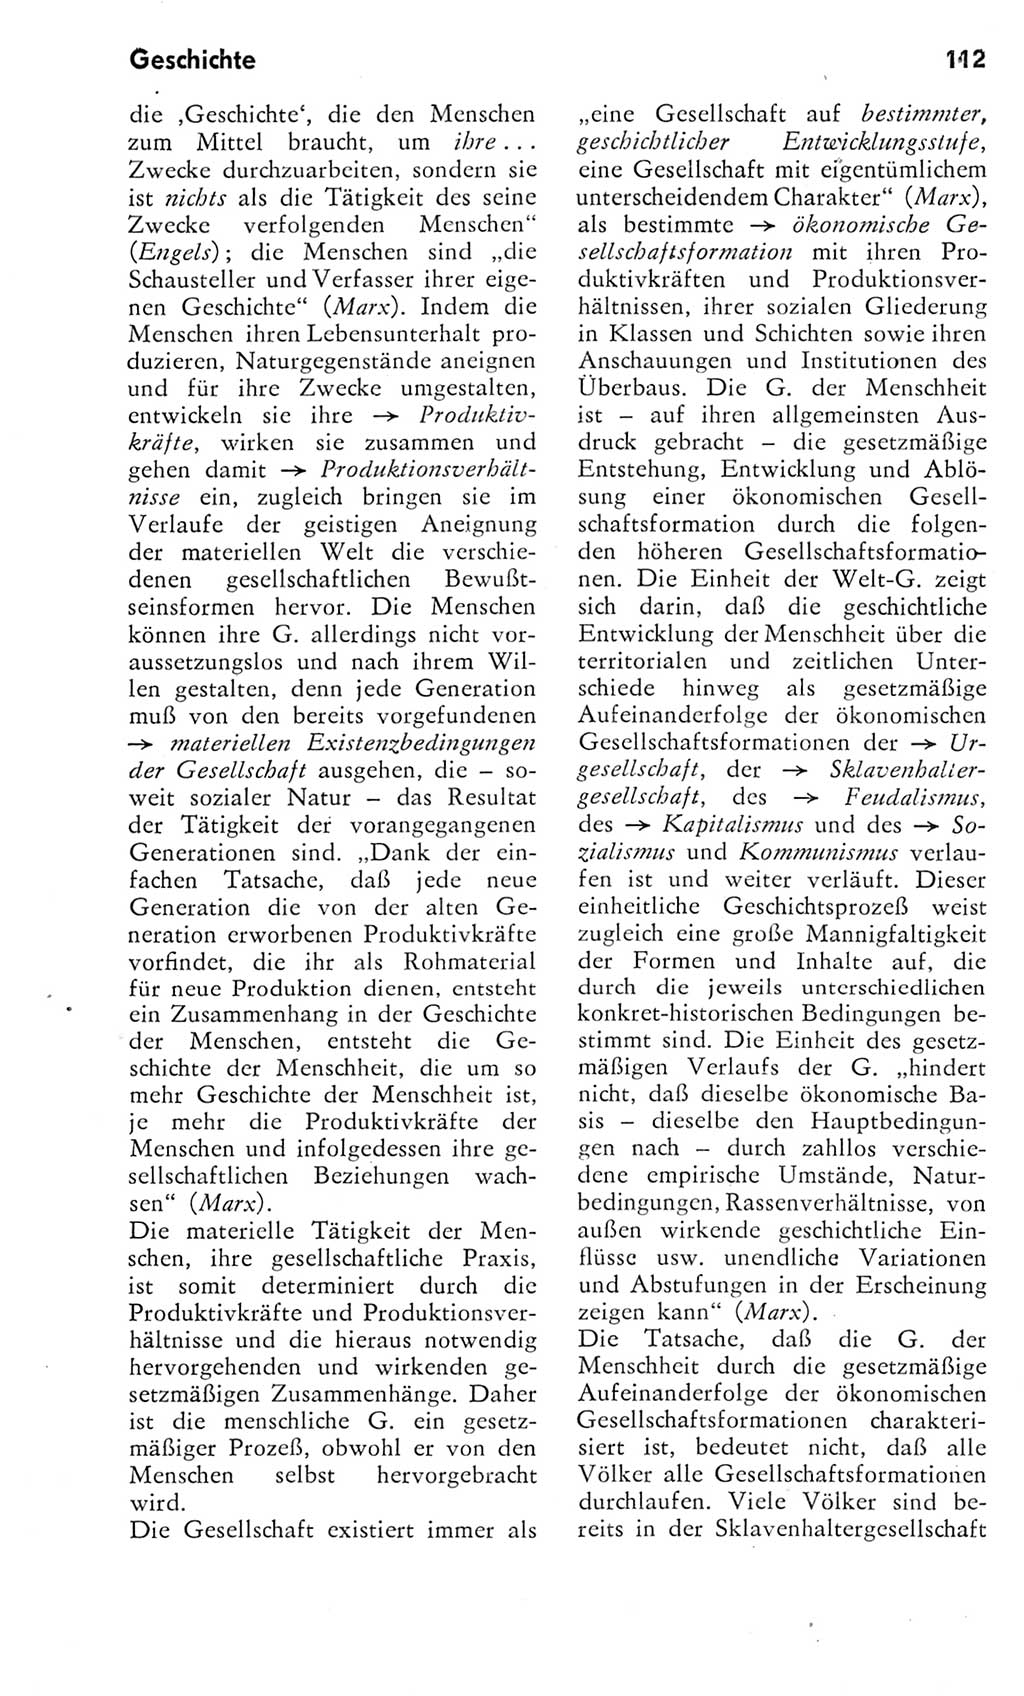 Kleines Wörterbuch der marxistisch-leninistischen Philosophie [Deutsche Demokratische Republik (DDR)] 1975, Seite 112 (Kl. Wb. ML Phil. DDR 1975, S. 112)